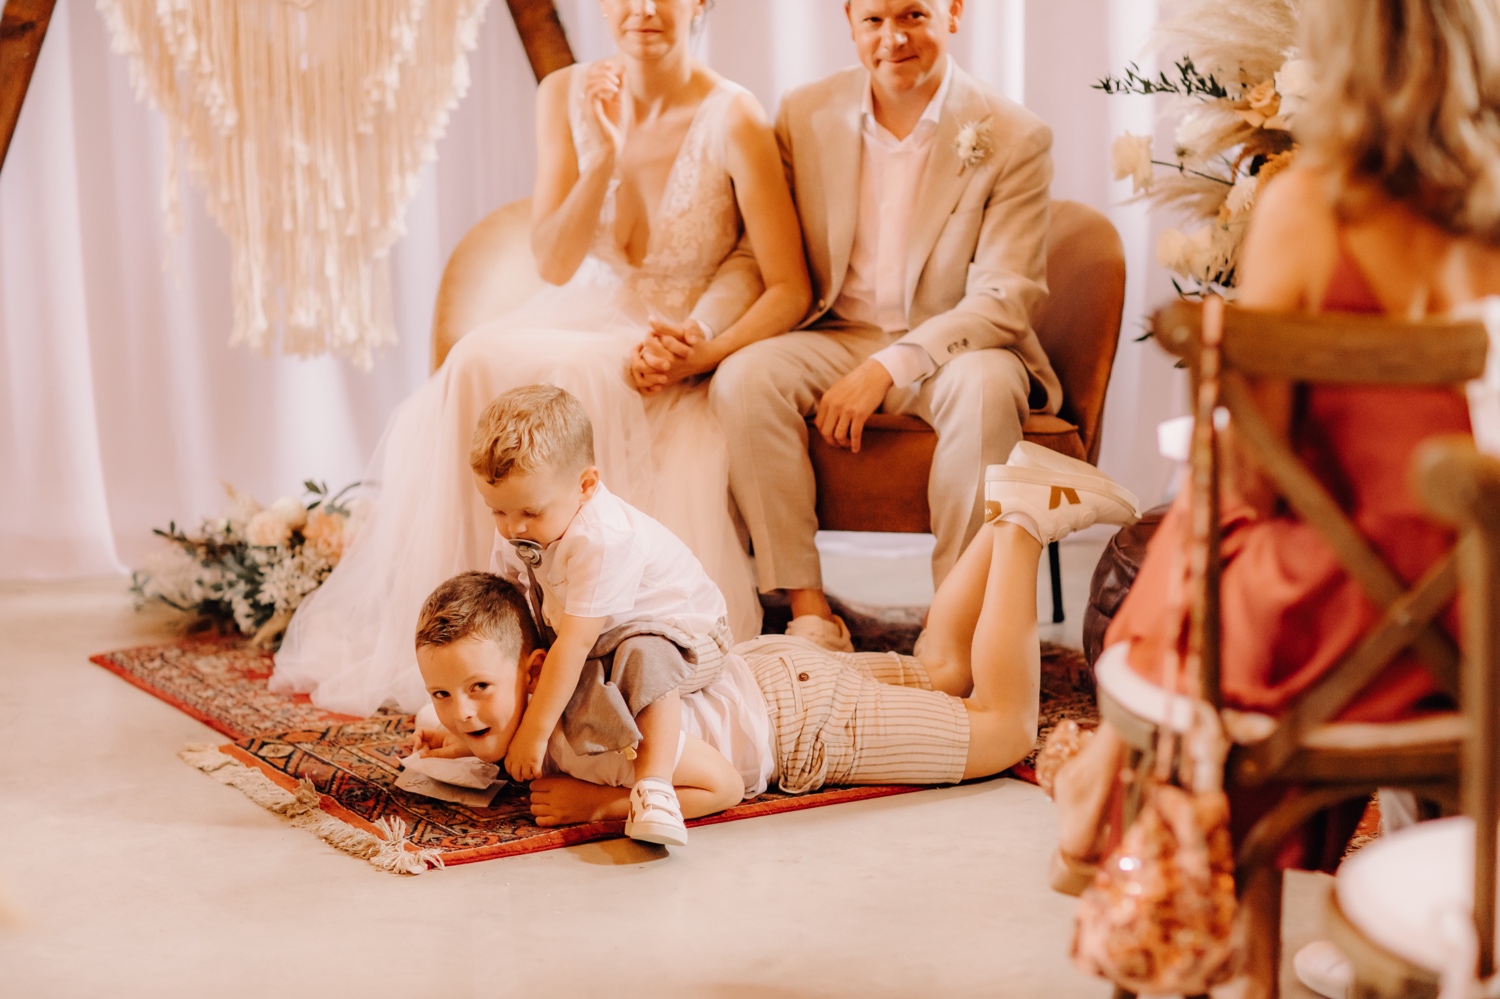 Huwelijksfotograaf Limburg - kleine broer gaat bovenop grote broer zitten tijdens ceremonie